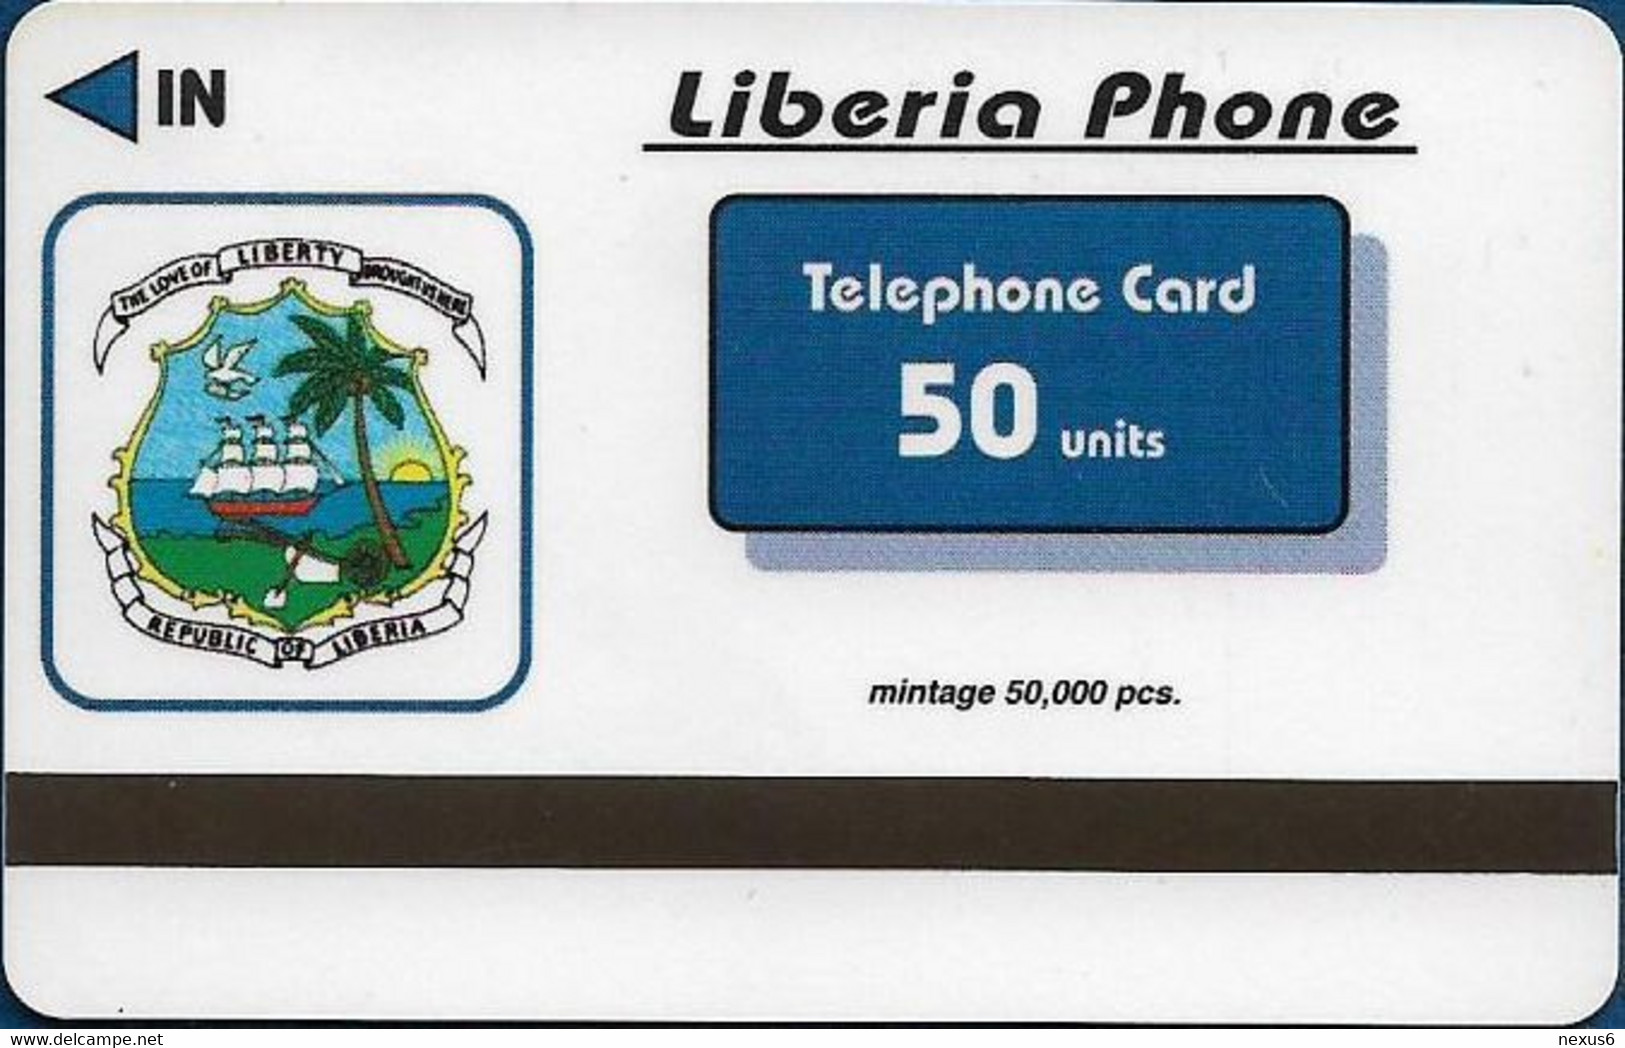 Liberia - Liberia Phone FAKE - Old F1 Racing Car, 50.000ex, 50U - Liberia